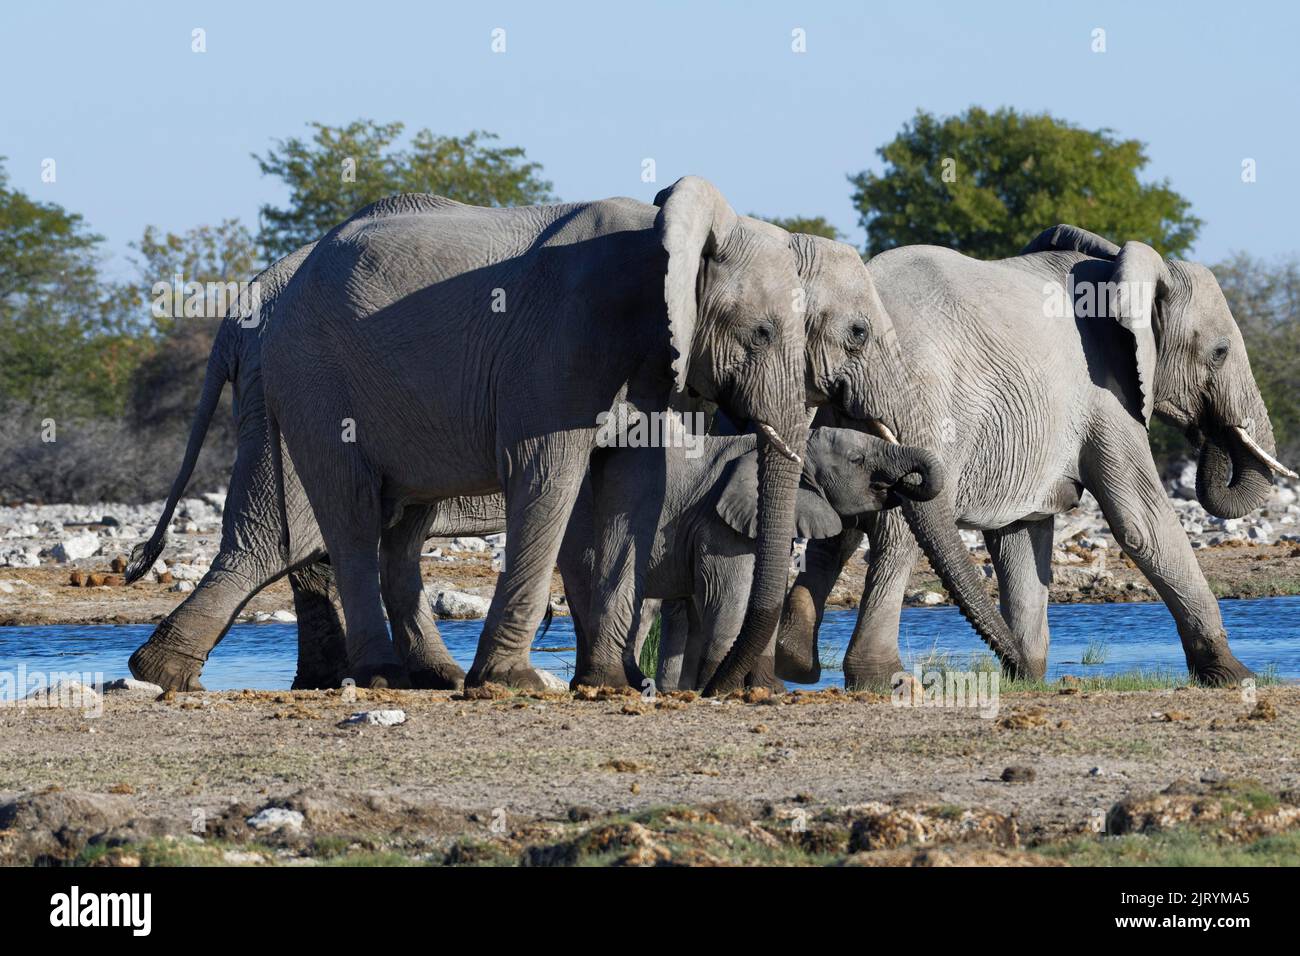 Elefanti africani di cespuglio (Loxodonta africana), mandria con giovani bevitori in una buca d'acqua, Parco Nazionale di Etosha, Namibia, Africa Foto Stock